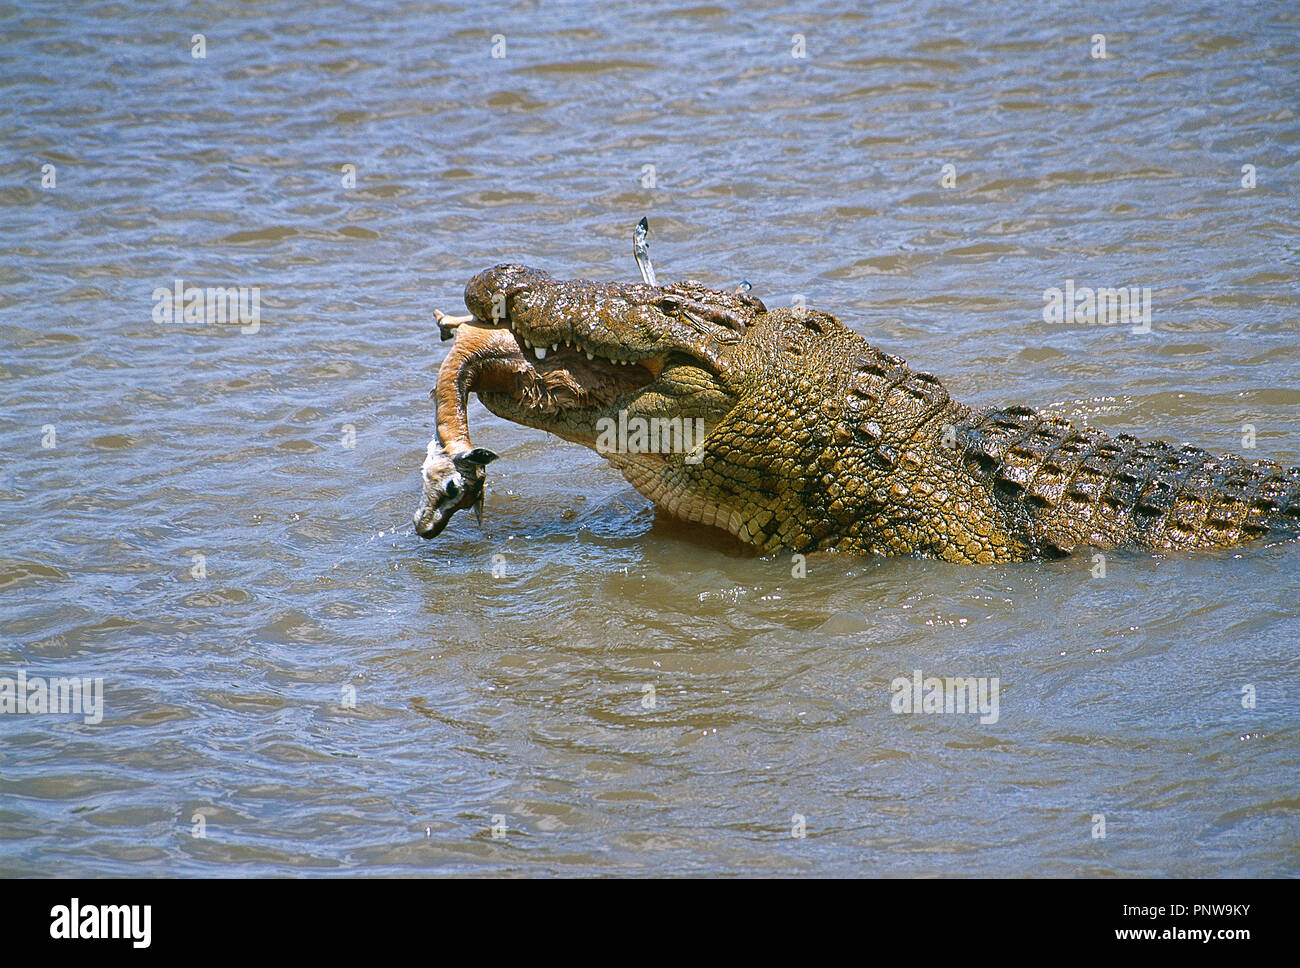 Kenya. Río Mara. Crocodile fresco con matar en sus mandíbulas. Foto de stock